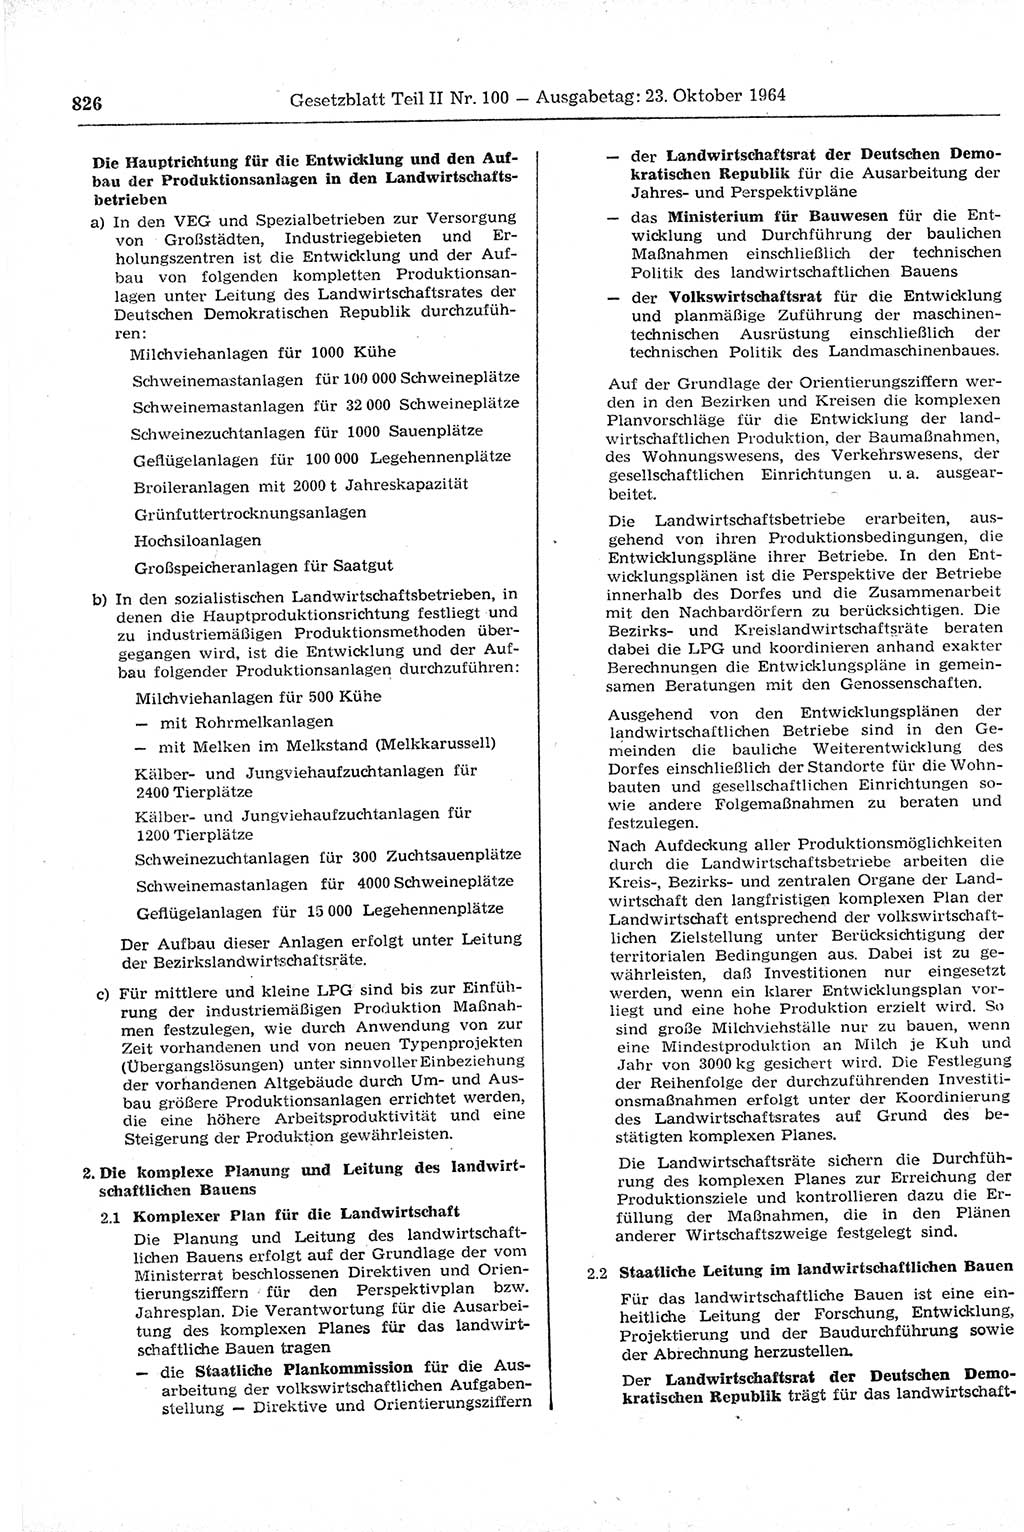 Gesetzblatt (GBl.) der Deutschen Demokratischen Republik (DDR) Teil ⅠⅠ 1964, Seite 826 (GBl. DDR ⅠⅠ 1964, S. 826)